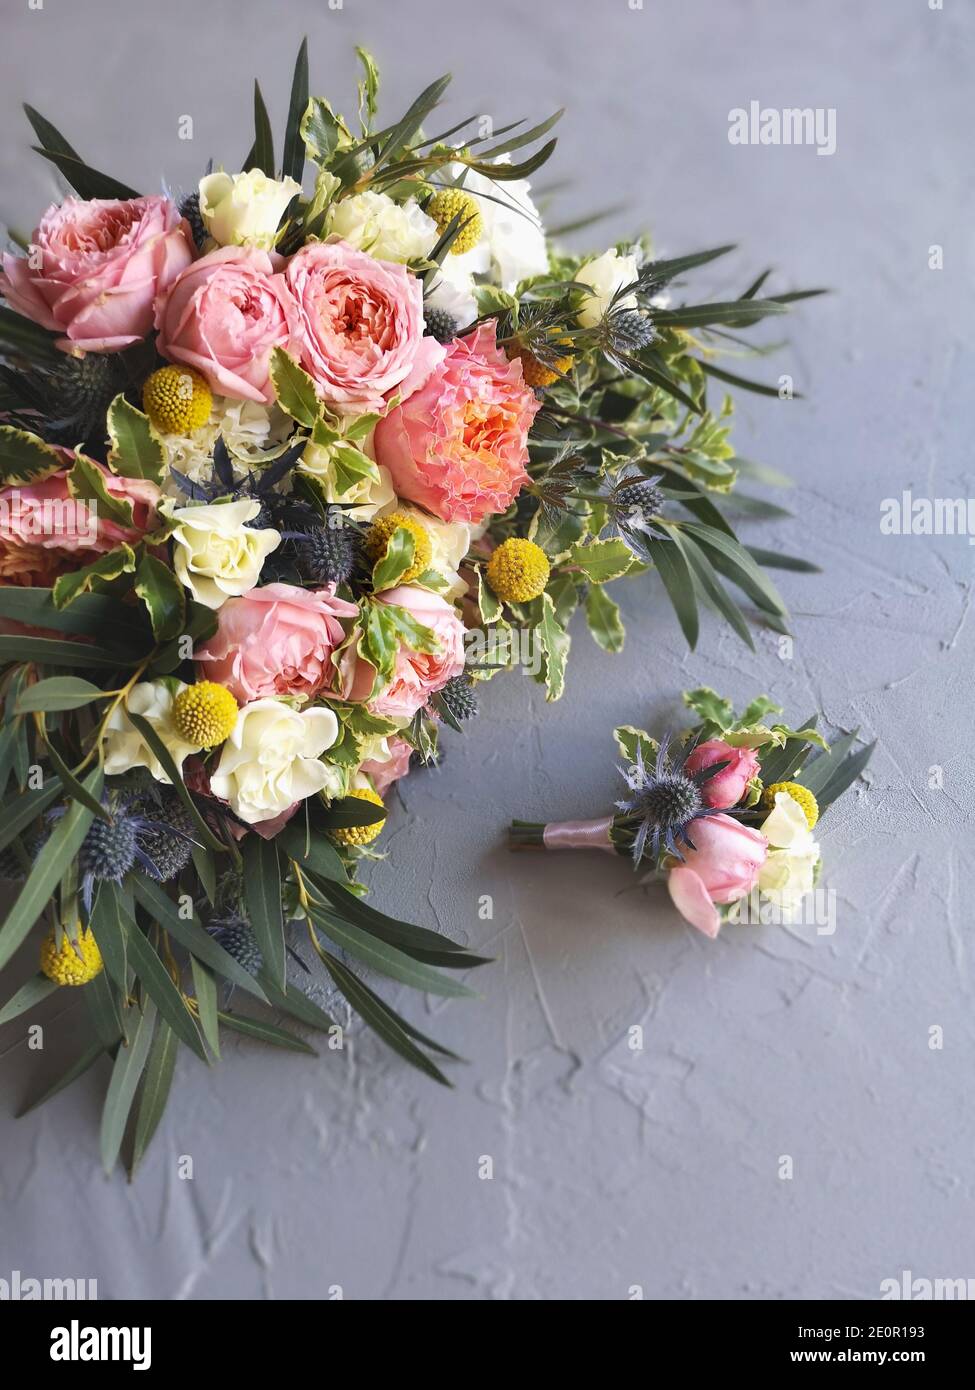 ramo de flores rosas, blancas y amarillas para la novia y boutonniere para  el novio en la mesa gris de la florista. Vista superior, diseño plano.  Jardín Inglés rosas spray Fotografía de